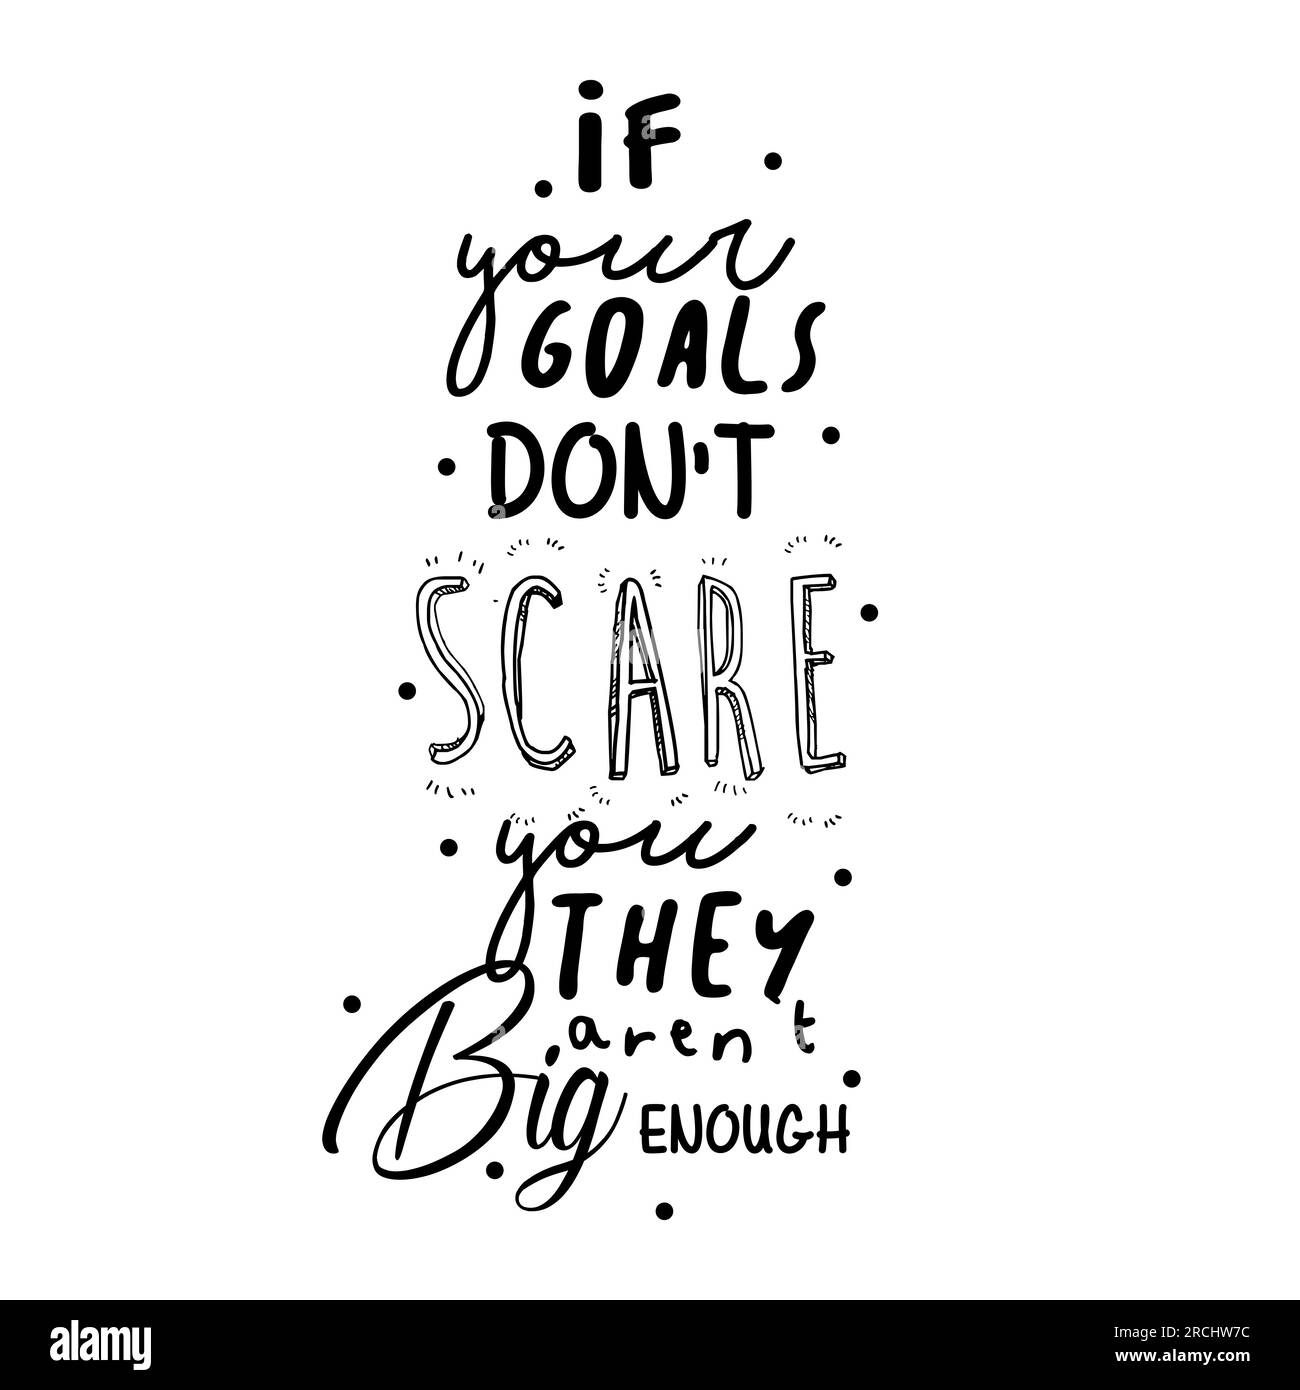 Wenn dir deine Ziele keine Angst machen, dann sind sie groß genug, inspirierende Zitate, Motivationsposter, Typografie, schwarzer Farbtext Stock Vektor